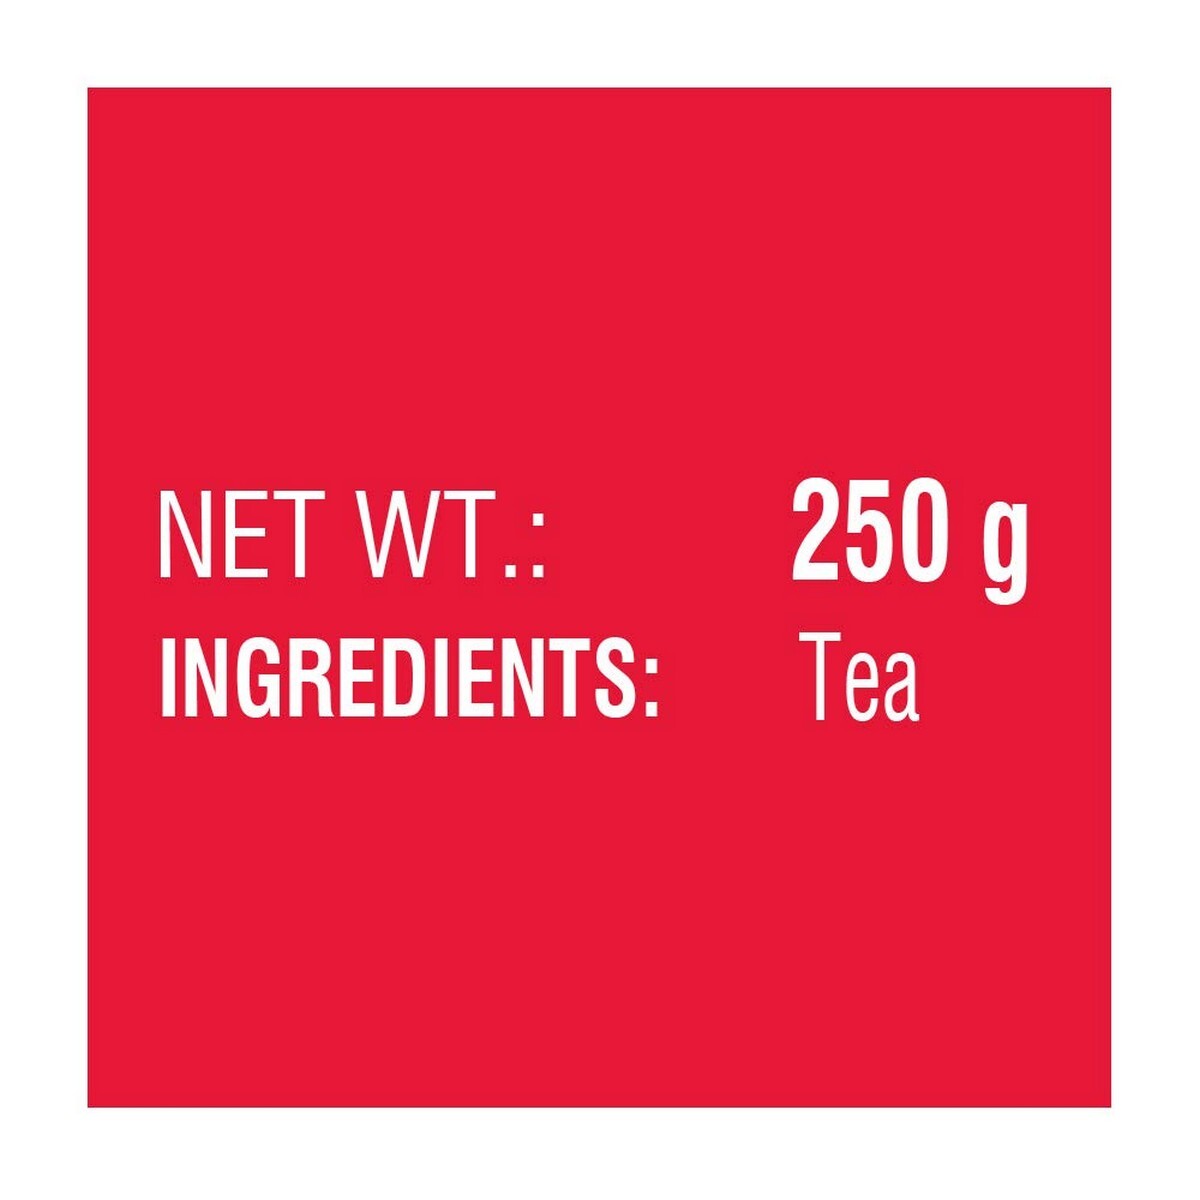 Tata Agni Leaf Tea 250gms